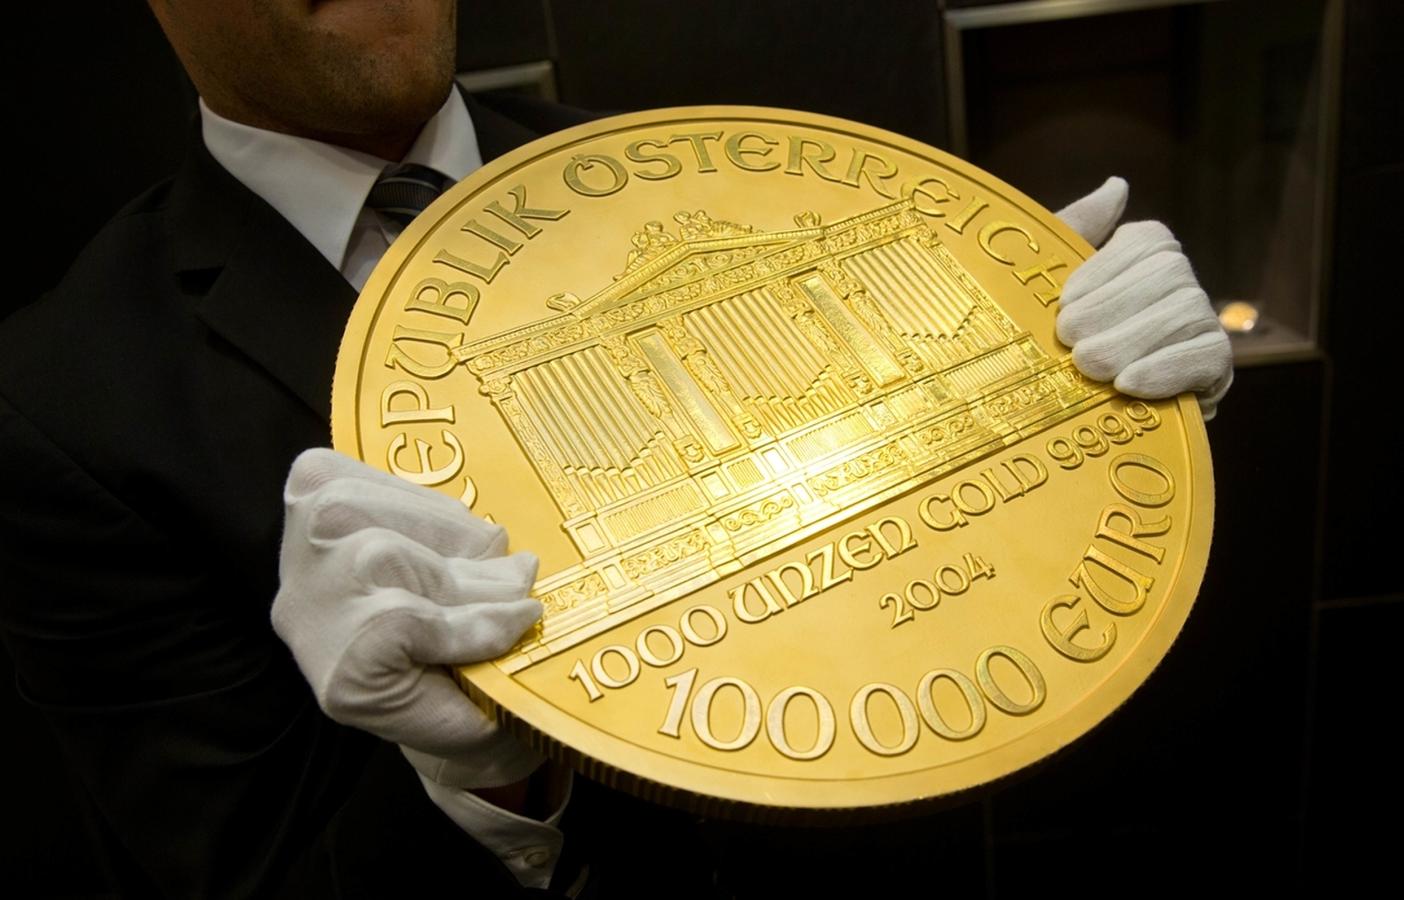 1000 золота в долларах. Золотая монета «Австрийская филармония». Золотые монеты 100 USD Liberty. Австрийская монета 100000 евро. Са ая большая Золотая монета.